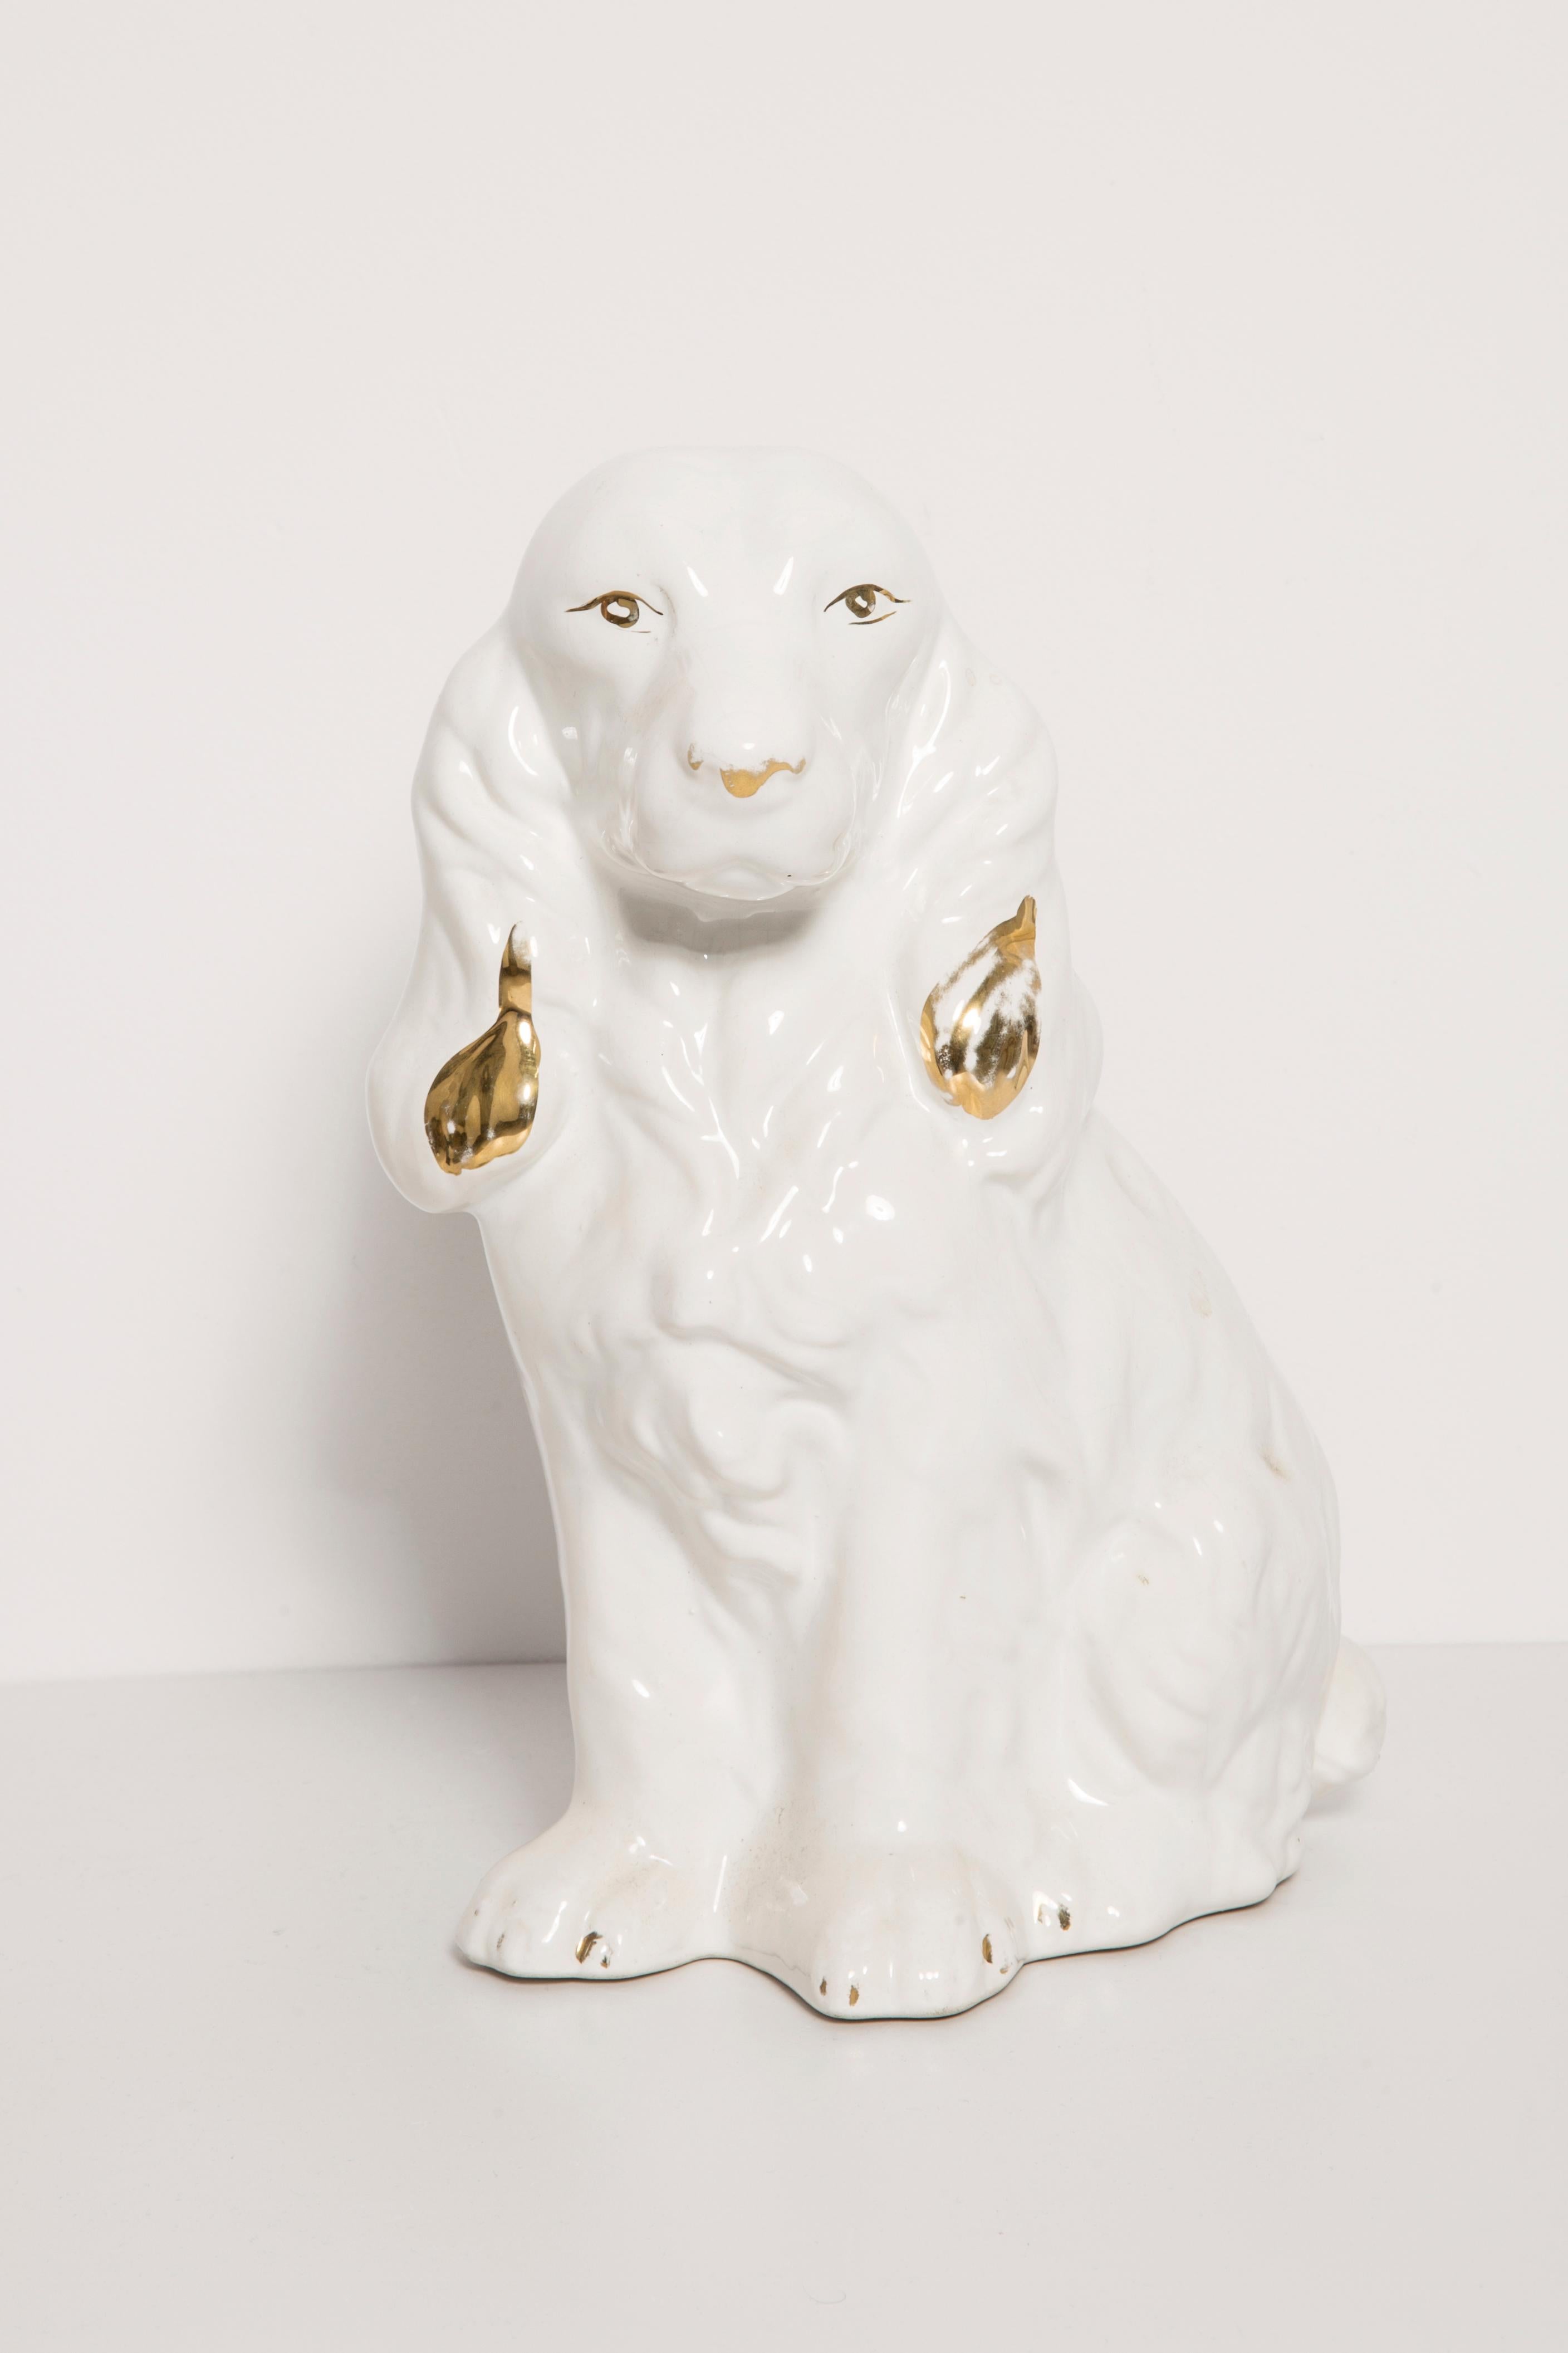 Bemalte Keramik/Terrakotta, guter Originalzustand. Schöne und einzigartige dekorative Skulptur. Der Spaniel-Hund wurde in den 1960er Jahren in Italien hergestellt.